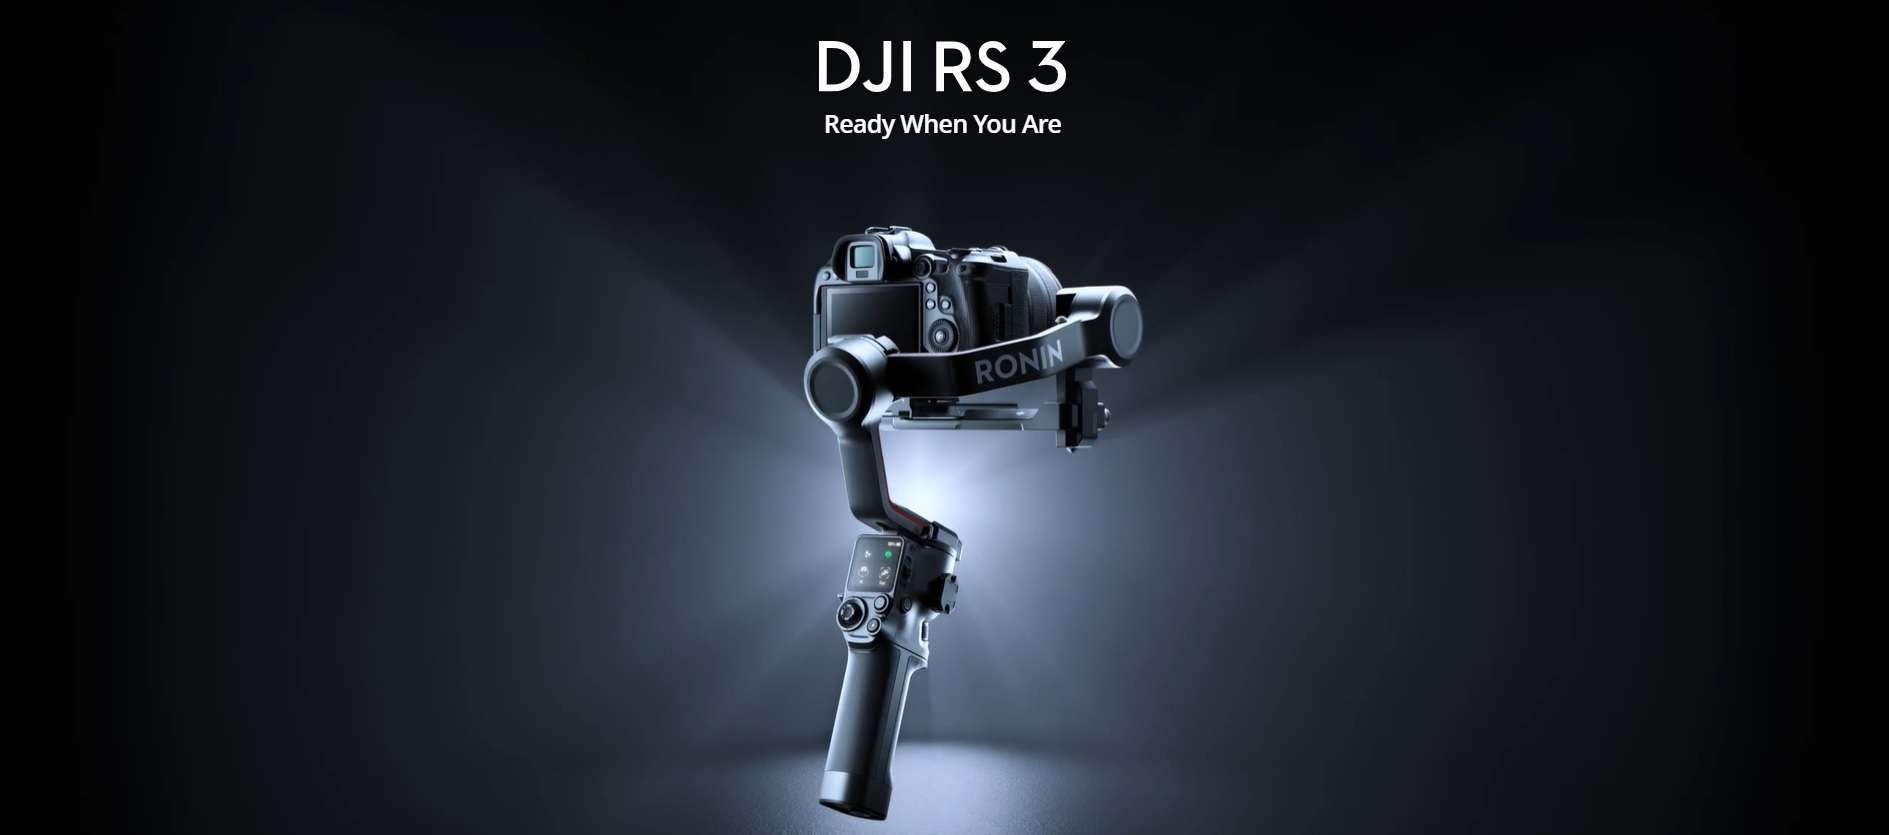 DJI RS 3 Gimbal Stabilizer